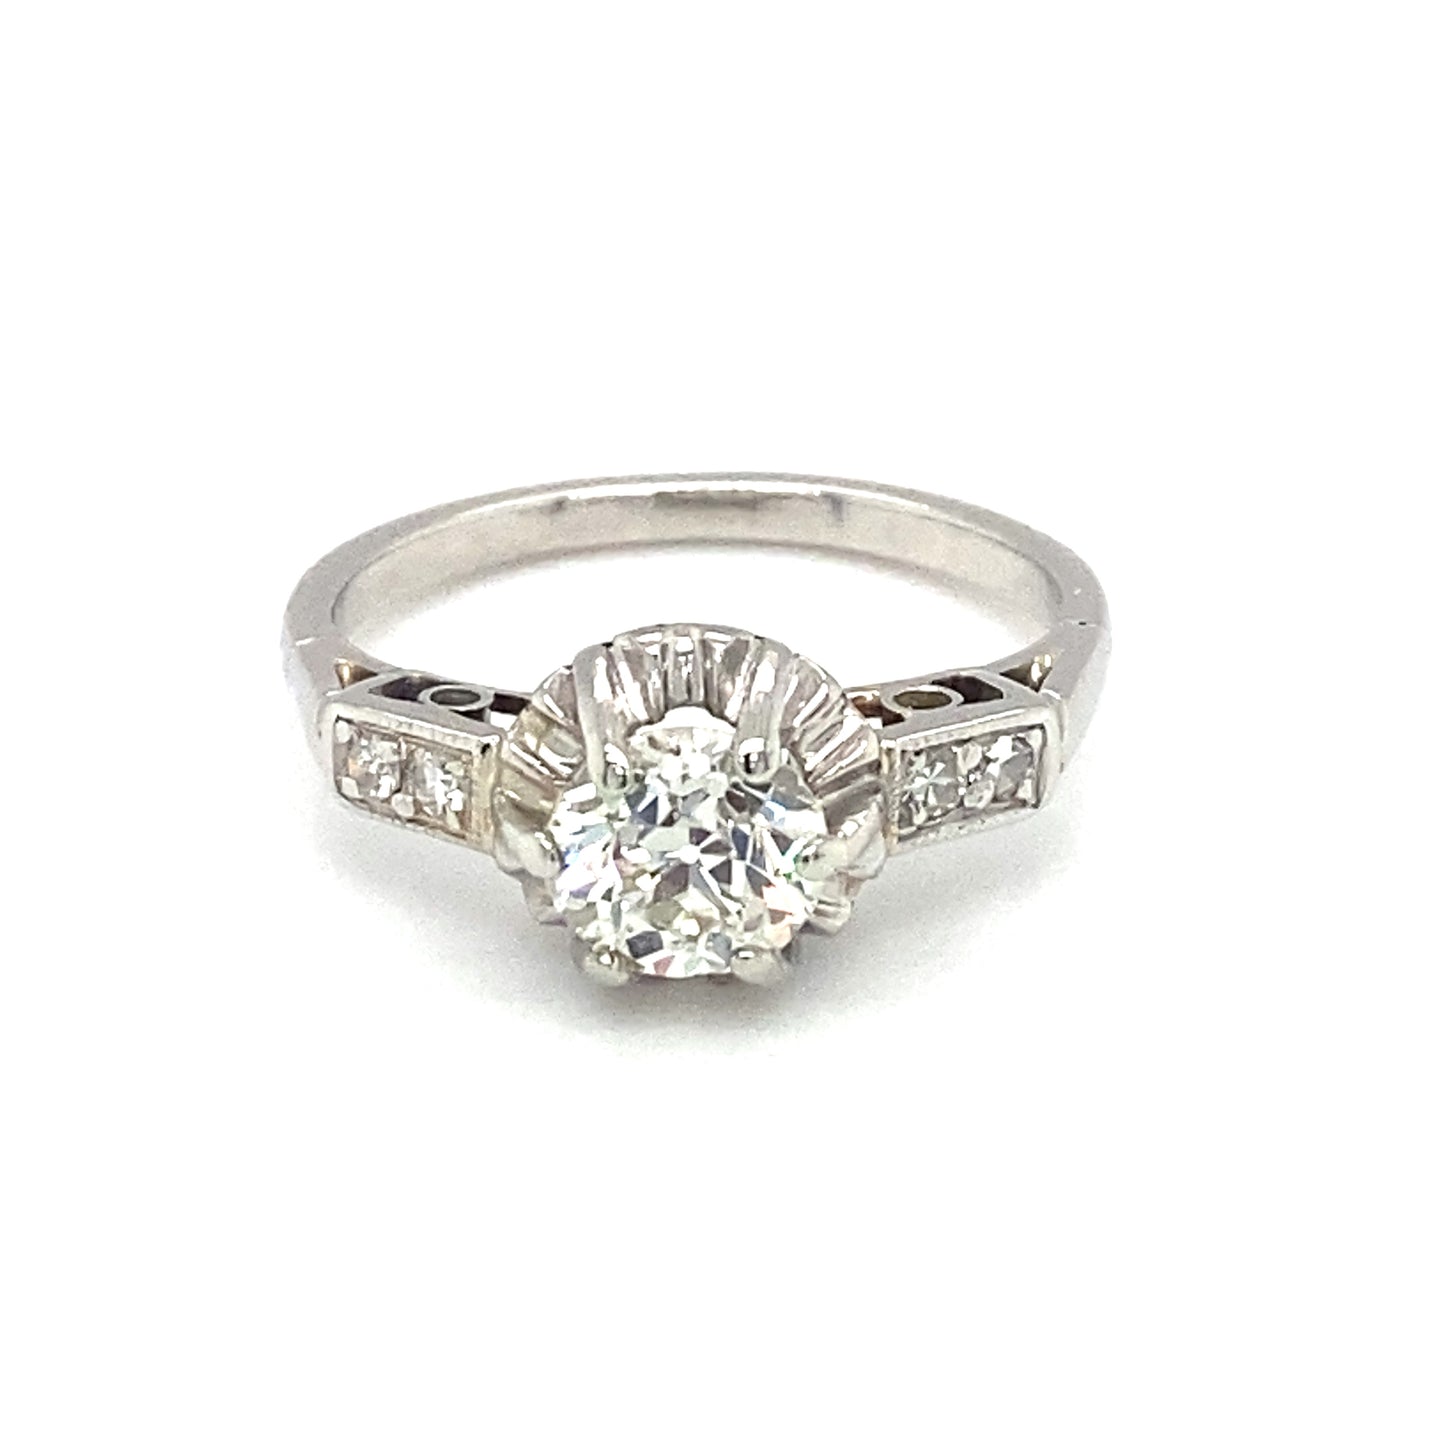 Circa 1920s Art Deco European Cut Diamond Engagement Ring in Platinum